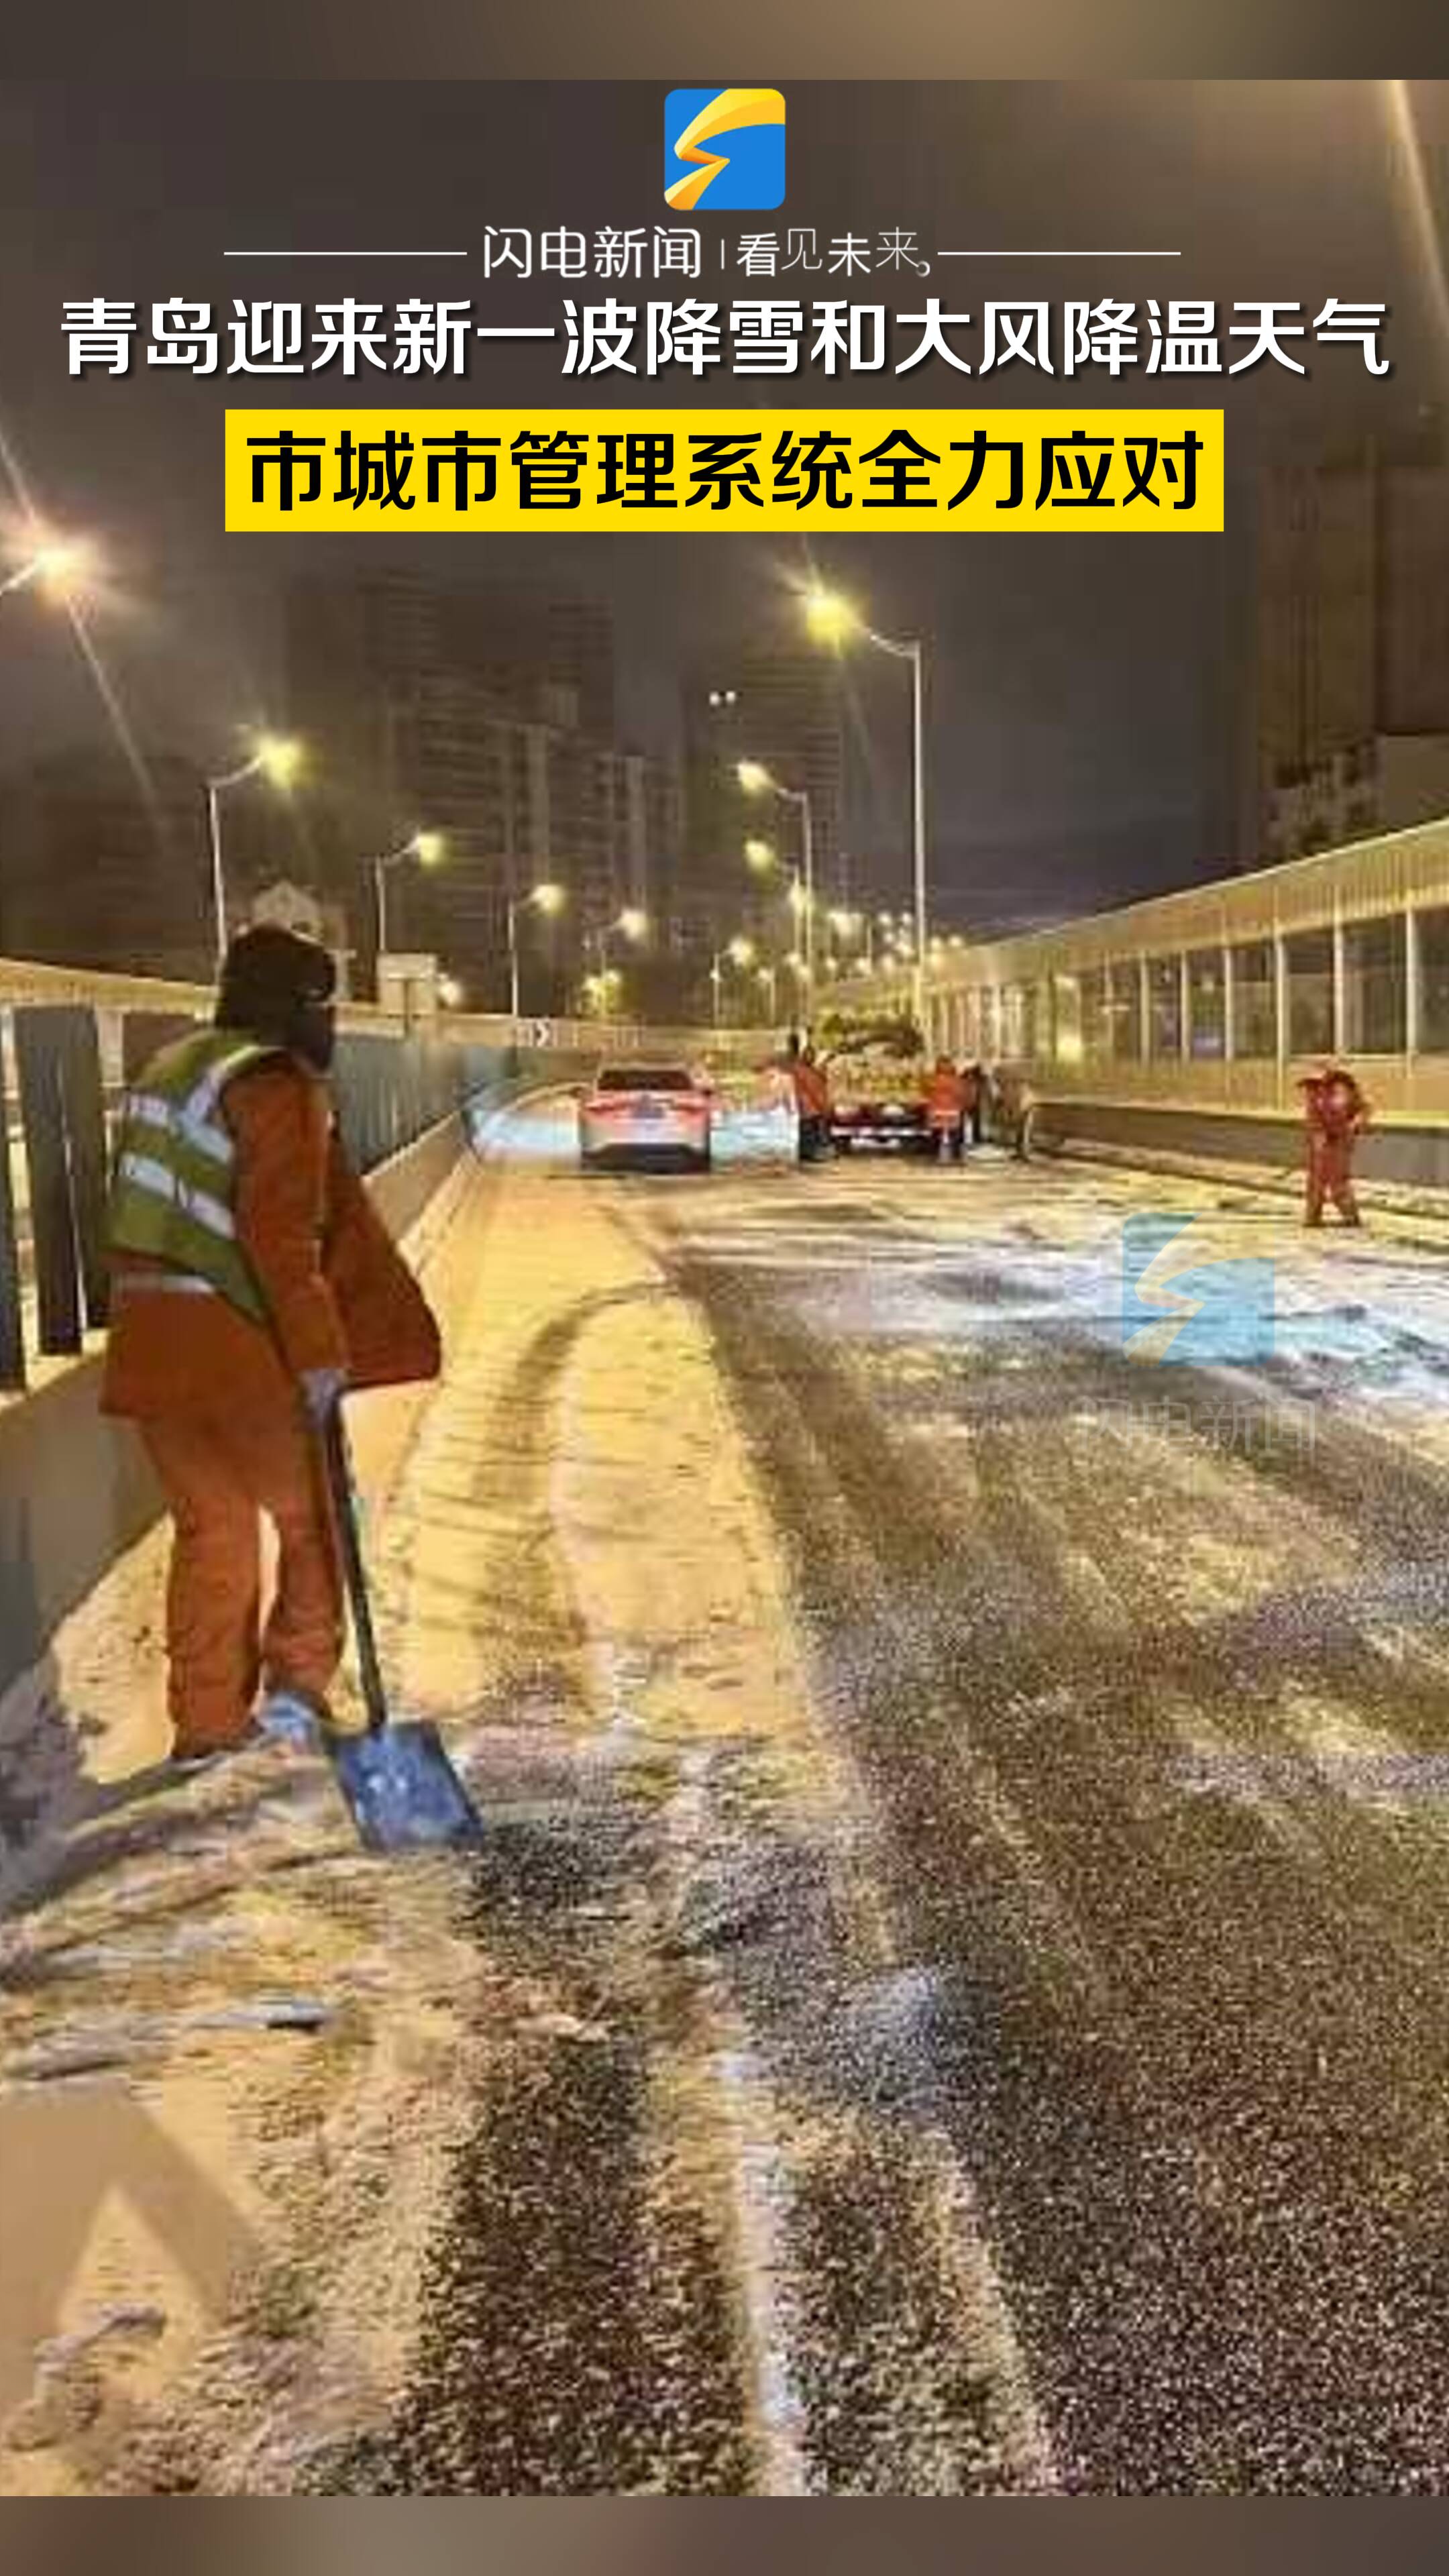 青岛迎来新一波降雪和大风降温天气 市城市管理系统全力应对